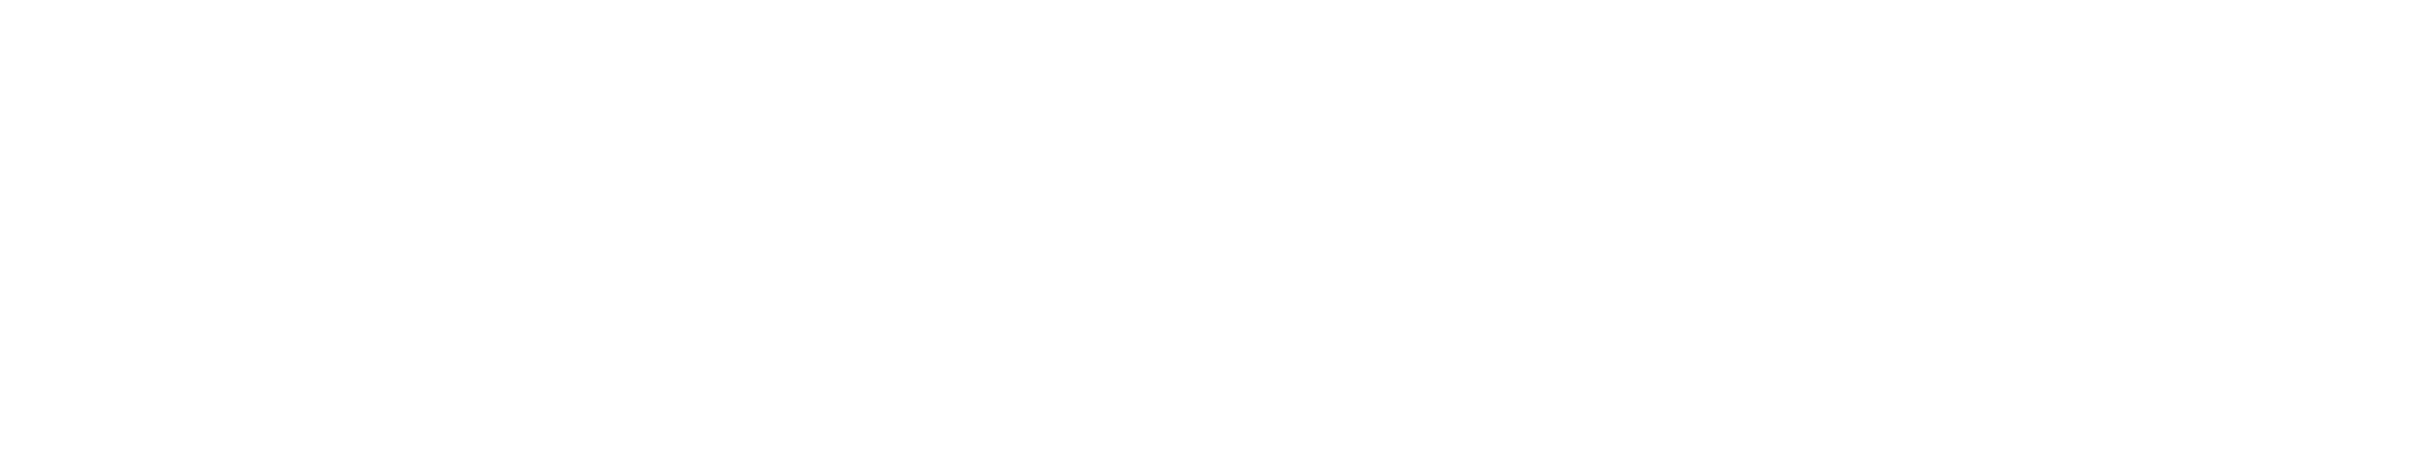 vfa - Die forschenden Pharma-Unternehmen